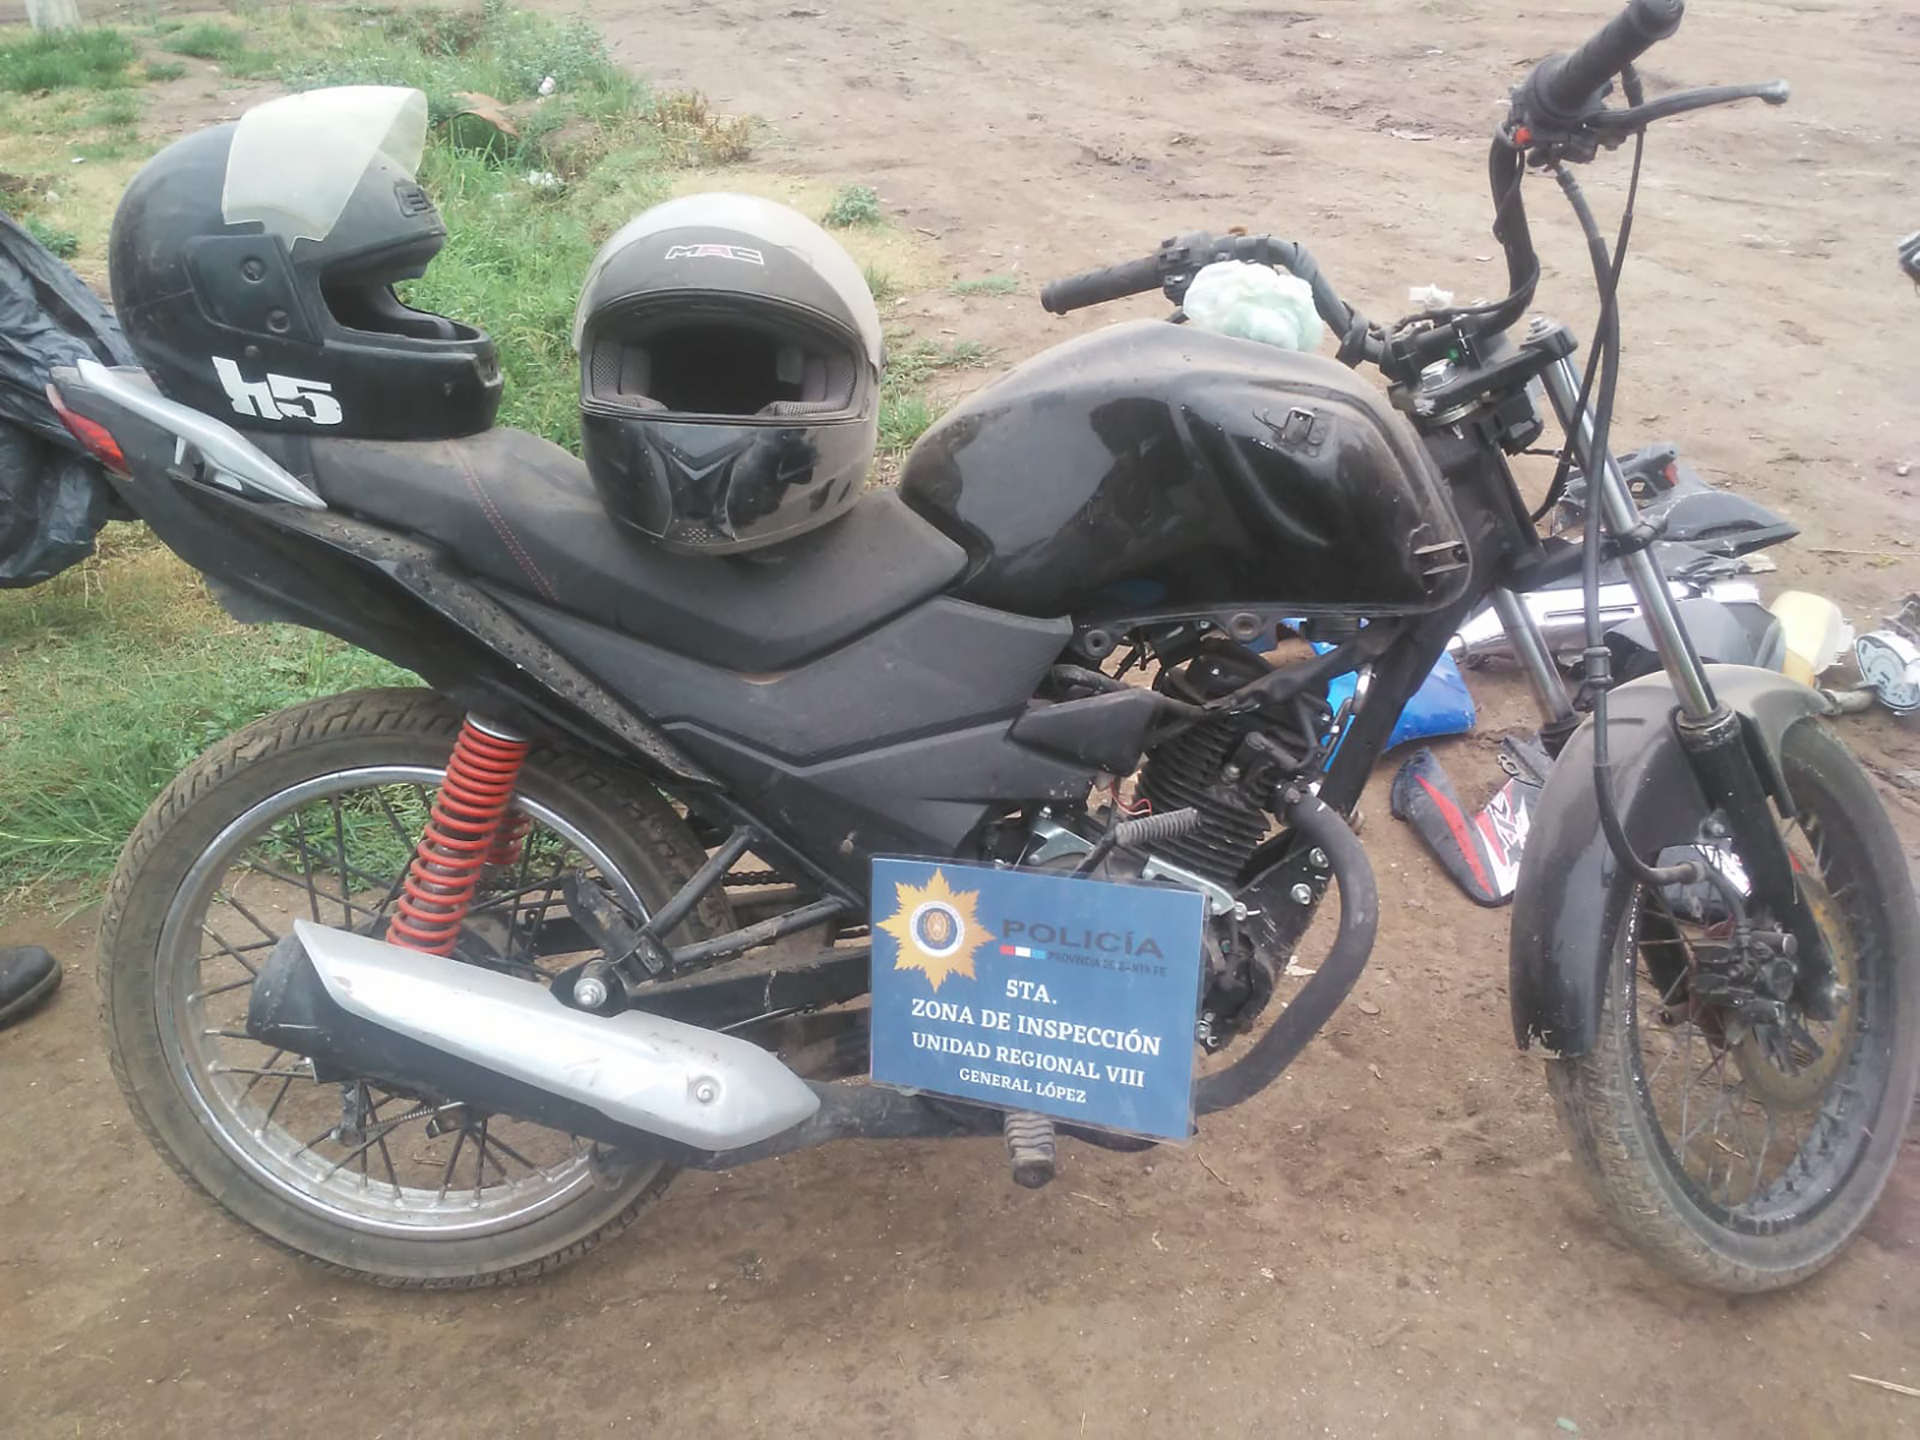 Una de las motos secuestradas en el marco del tiroteo en Venado Tuerto